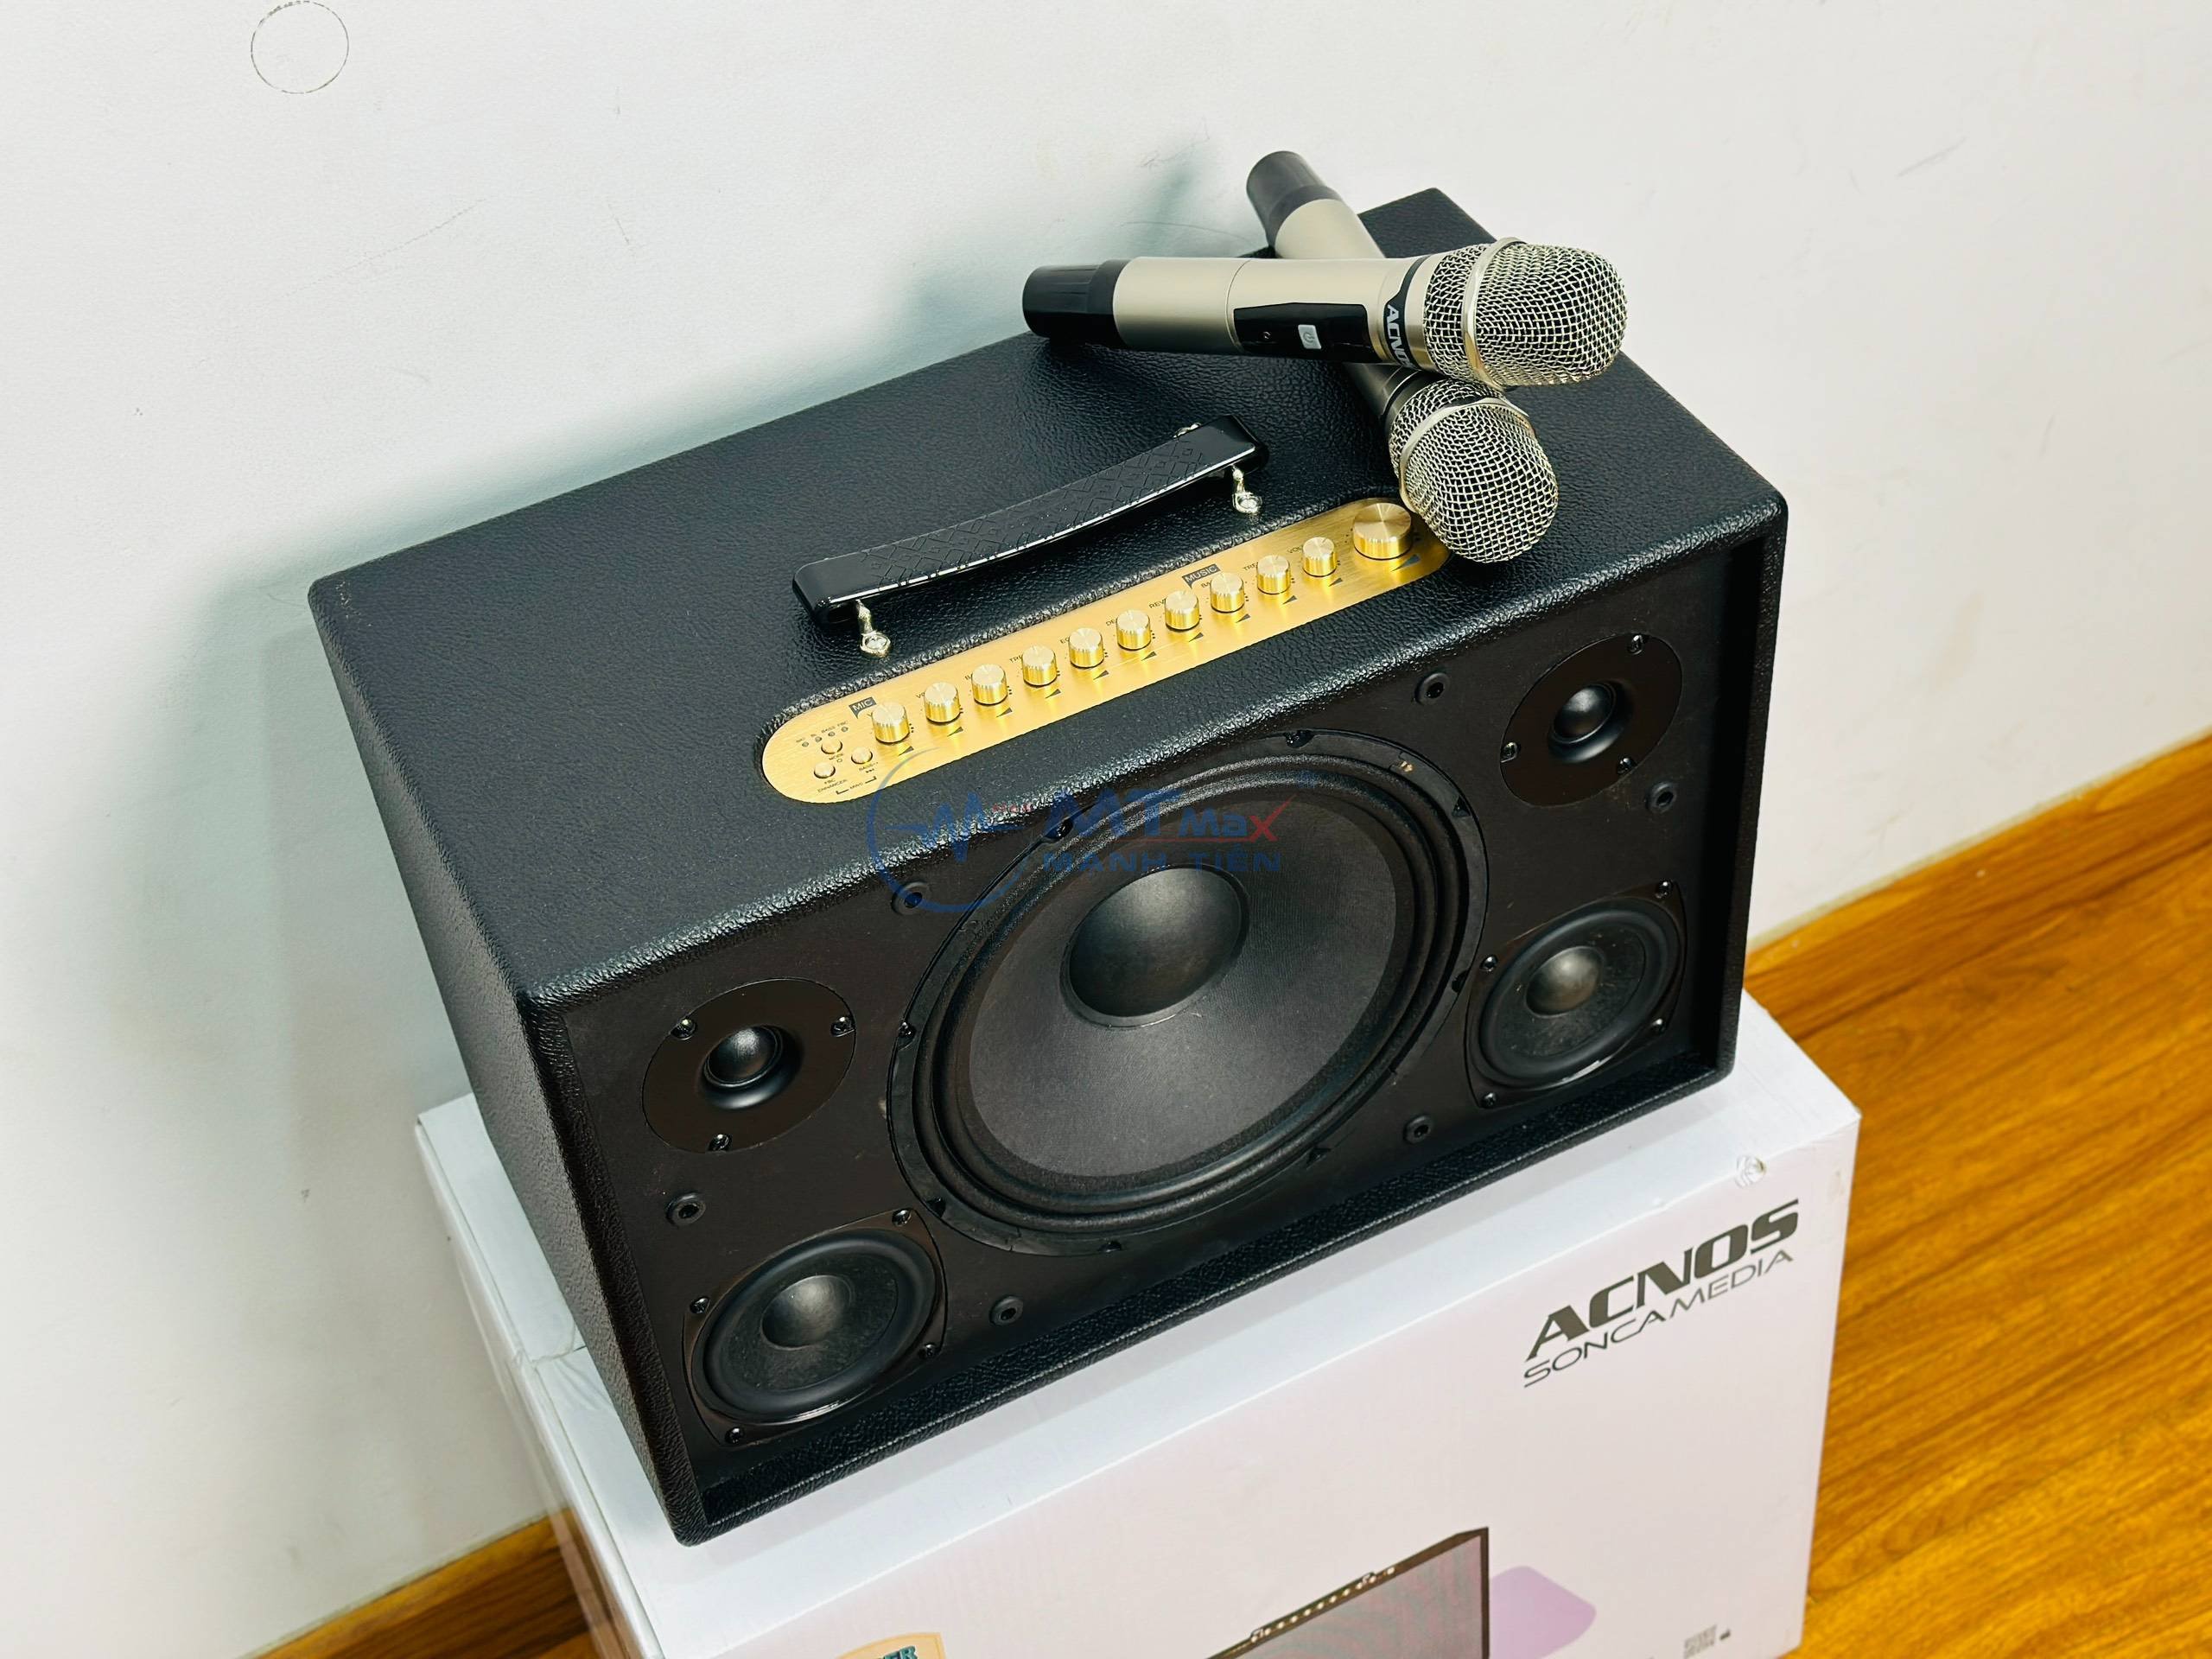 Loa Xách Tay ACNOS CS3600 - Loa Karaoke Chính Hãng 3 Đường Tiếng, Công Suất Lớn 500W, Âm Thanh Cao Cấp Chuyên Nghiệp, Nâng Tiếng, Chống Hú Siêu Cấp, Đi Kèm 2 Micro Karaoke hàng chính hãng